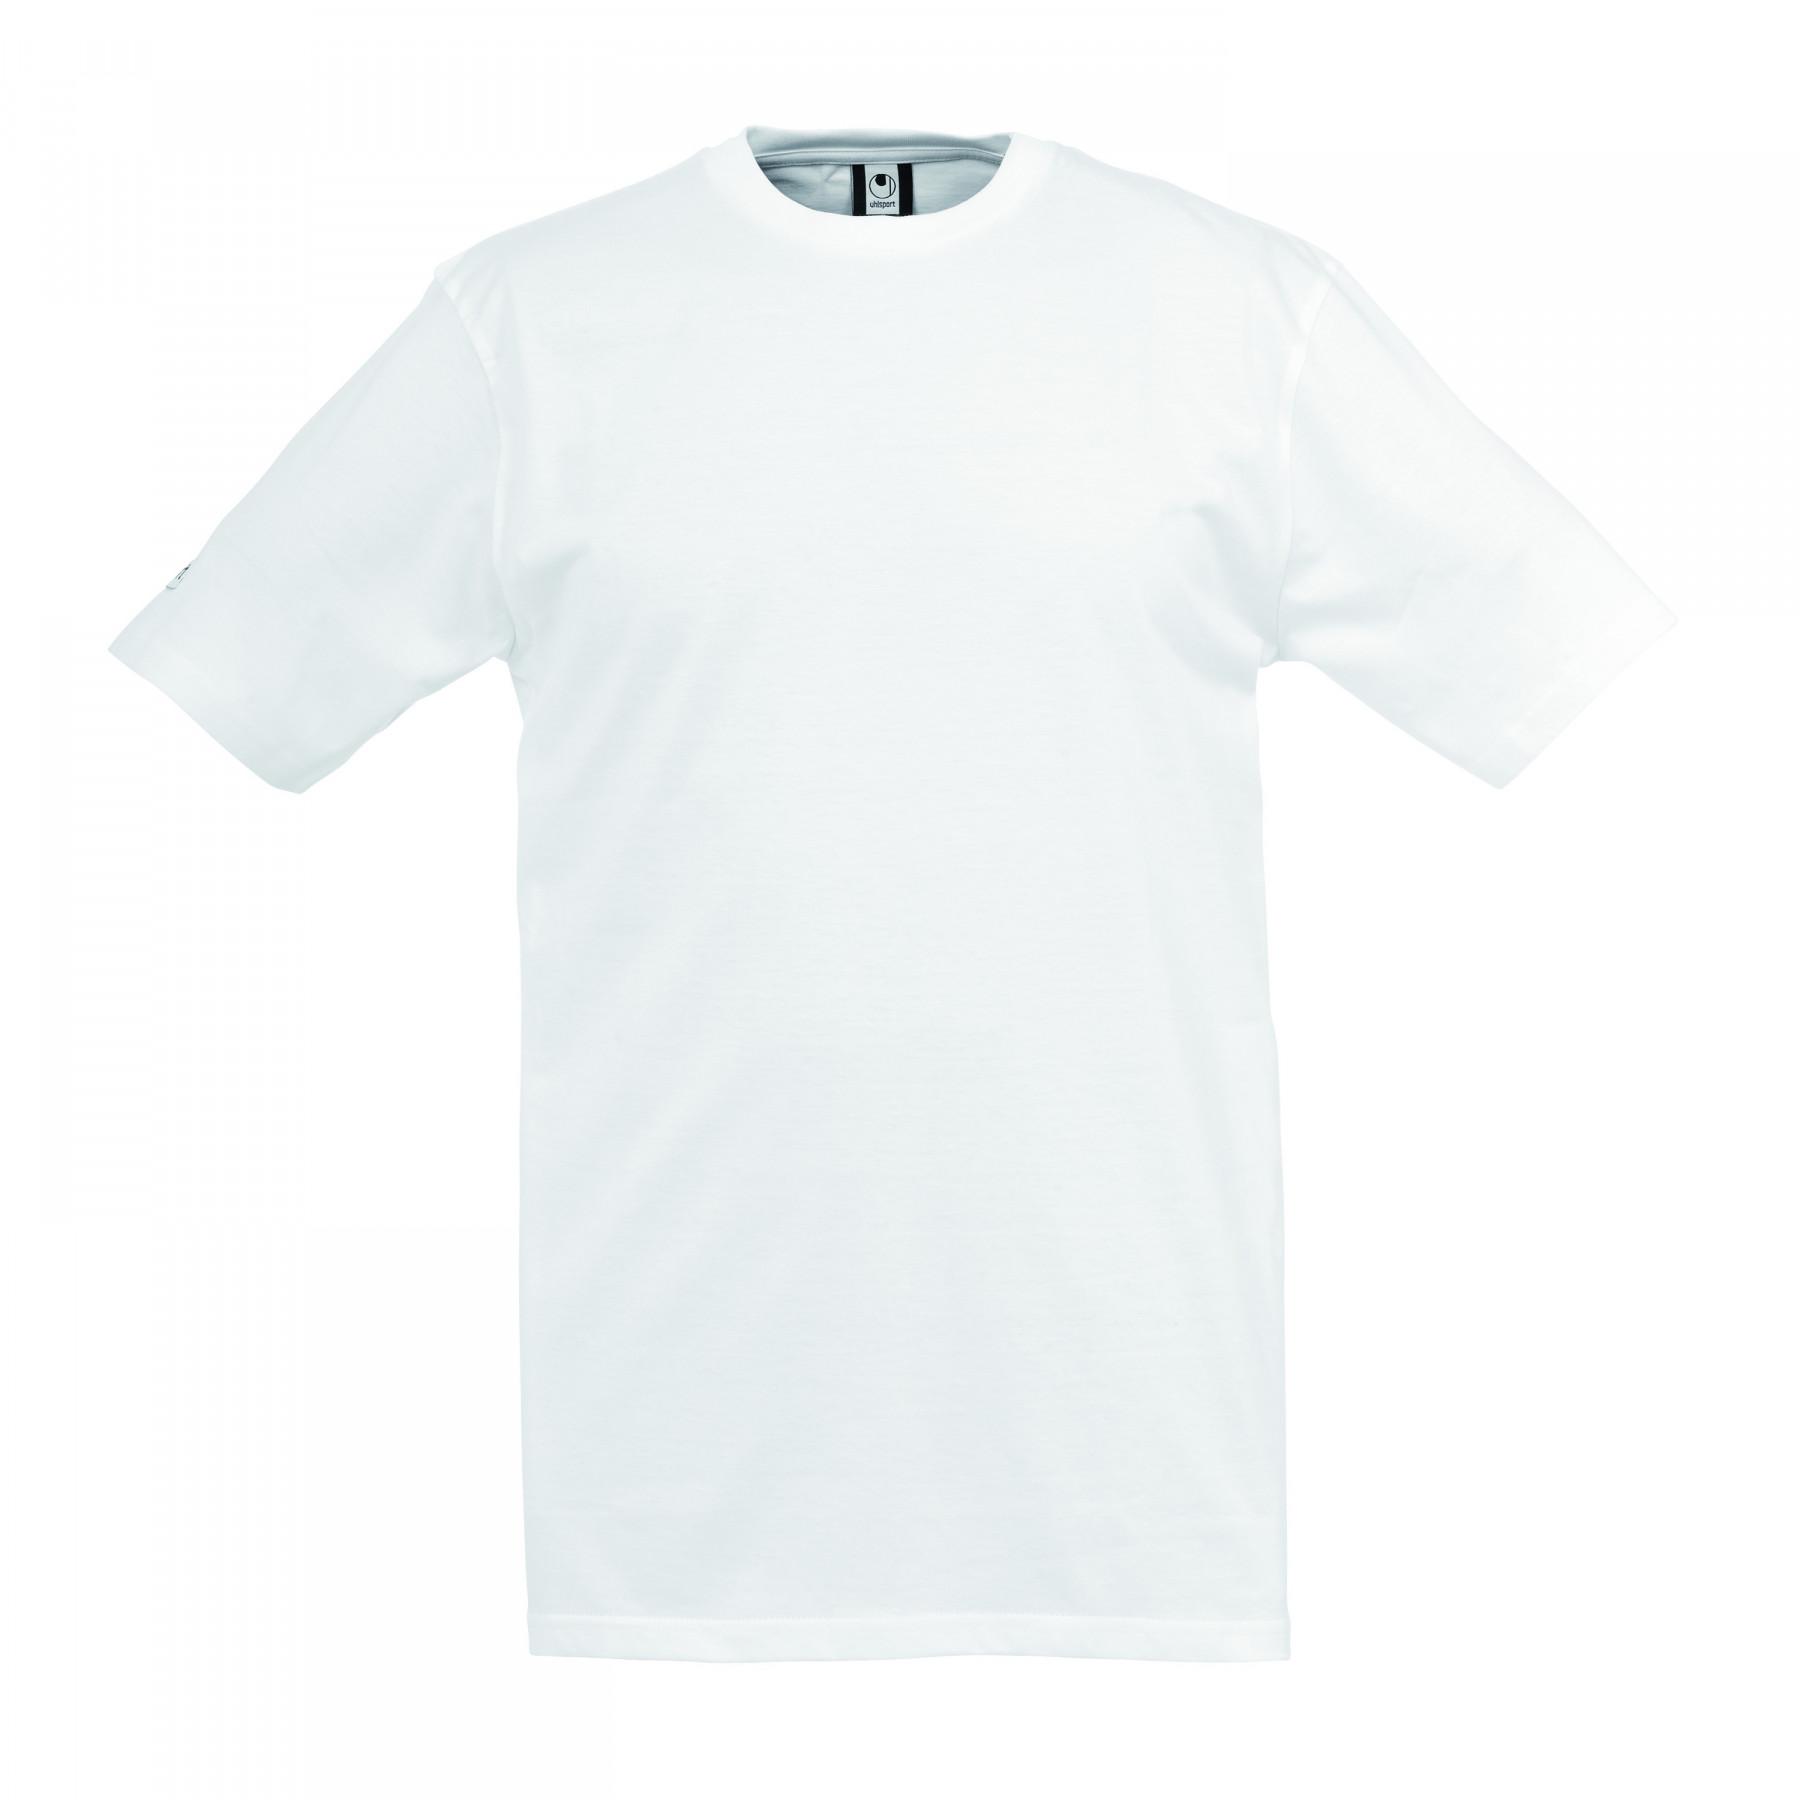 T-Shirt Uhlsport